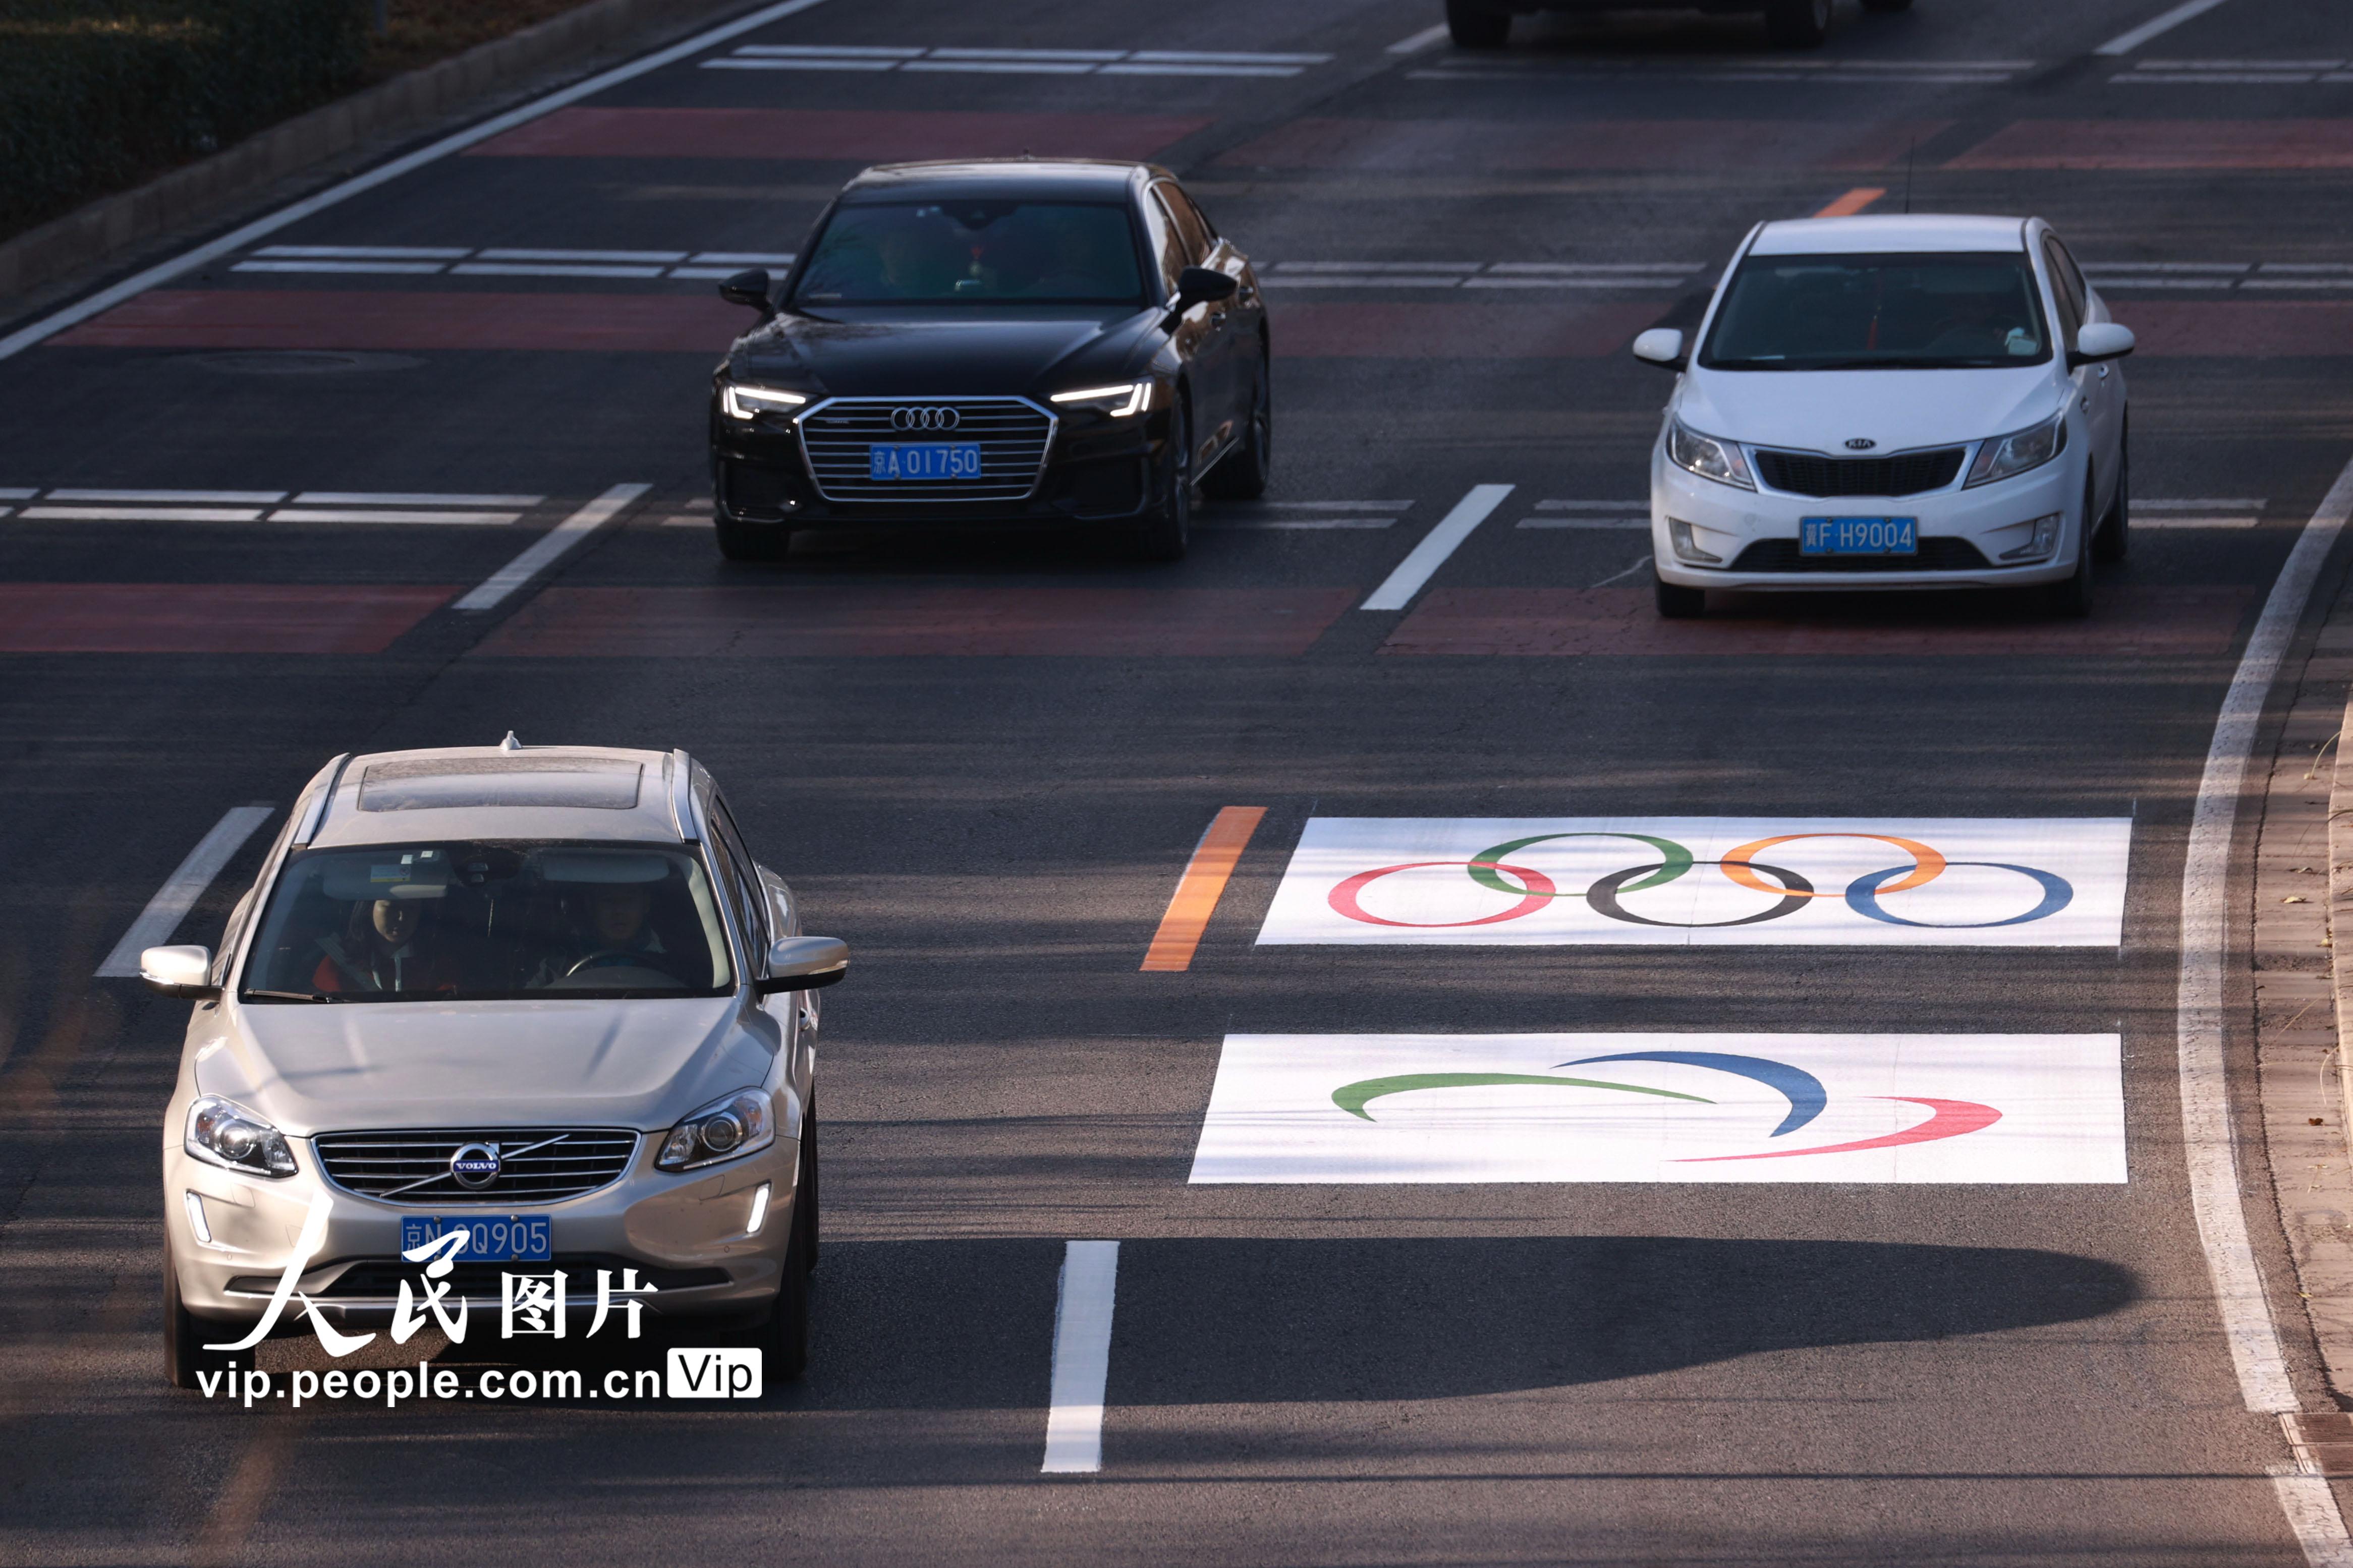 北京开始施划冬奥会专用车道